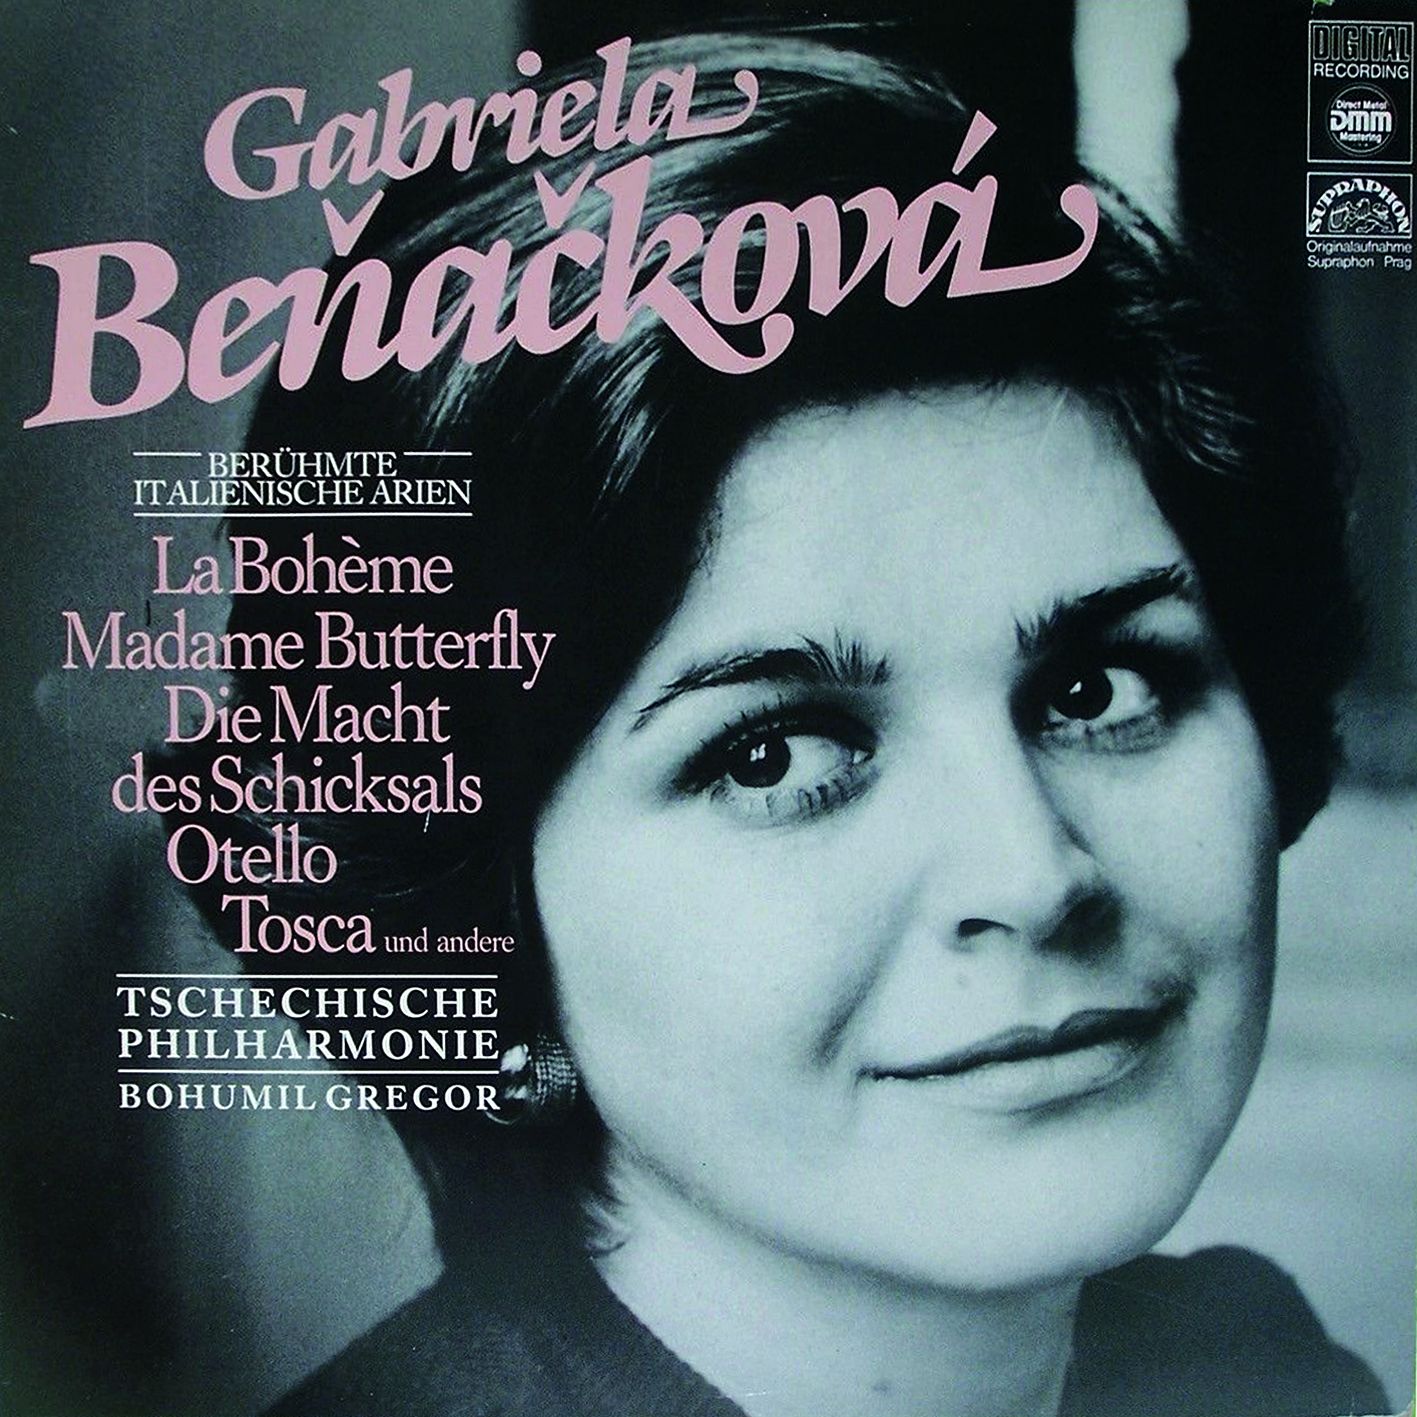 07-cd-benackova-beruhmte-italianischen-arien.jpg (315 KB)